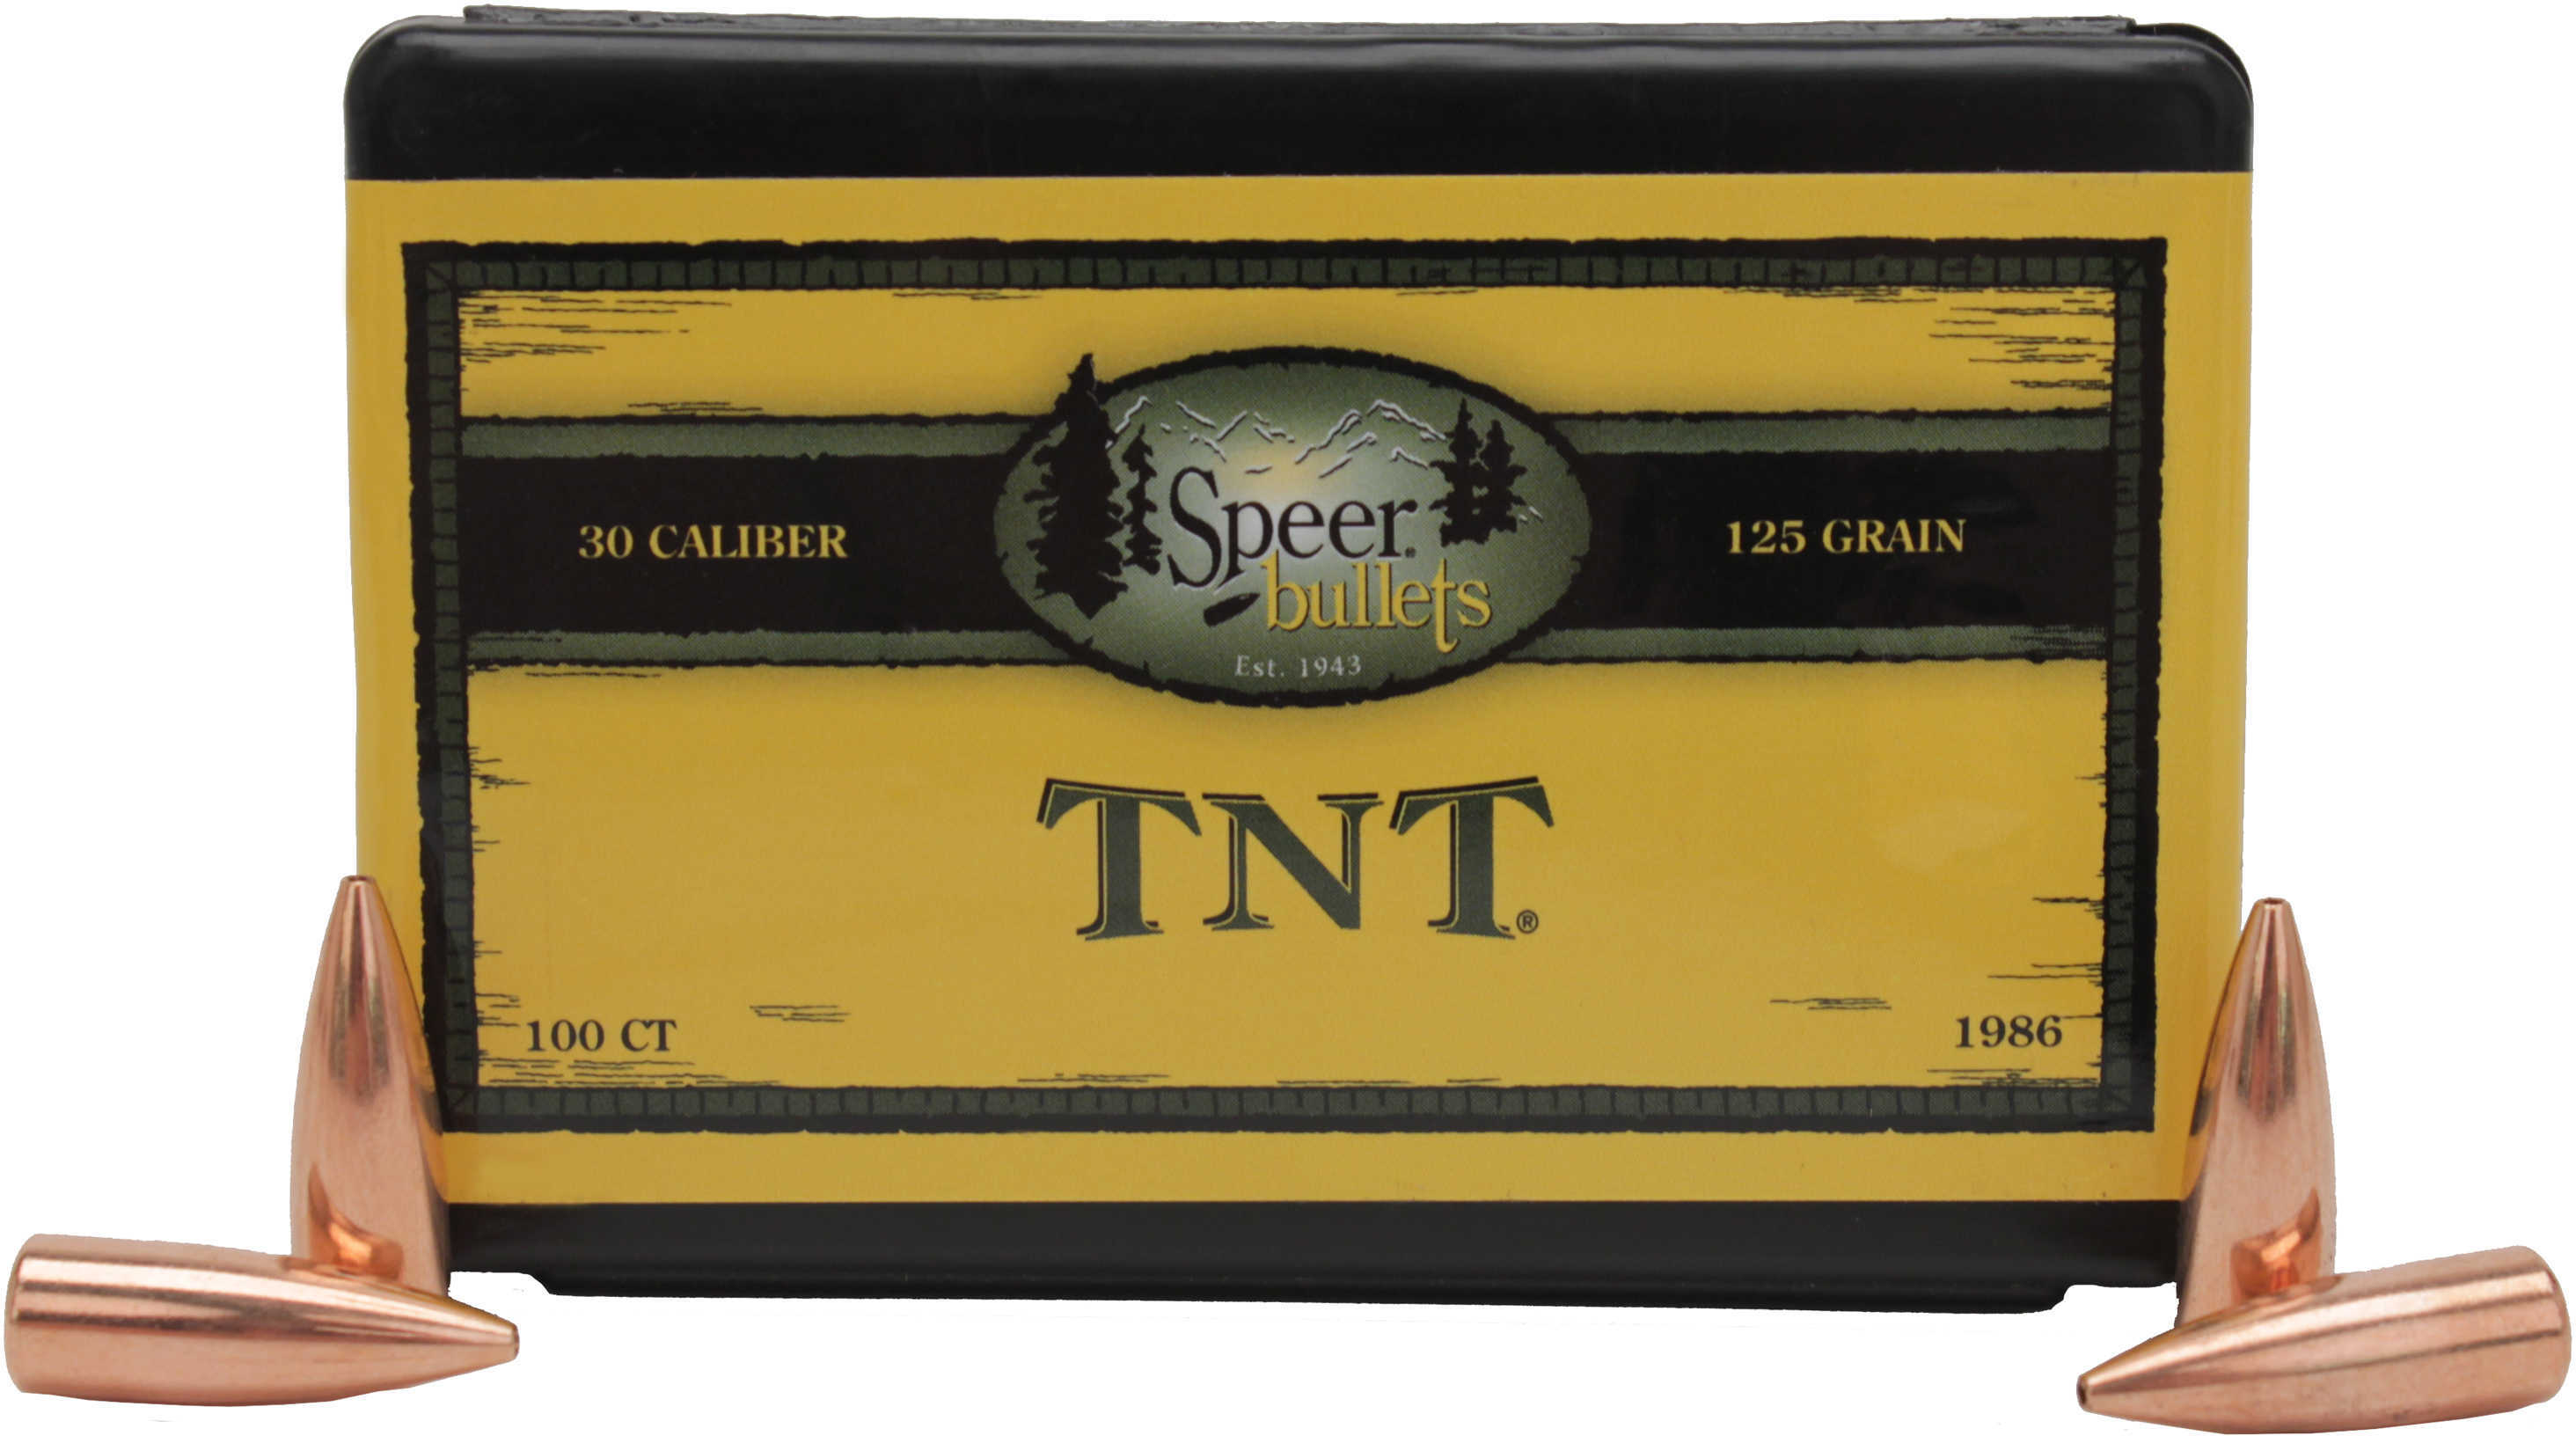 Speer 30 Caliber 125 Grains TNT HP (Per 100) 1986